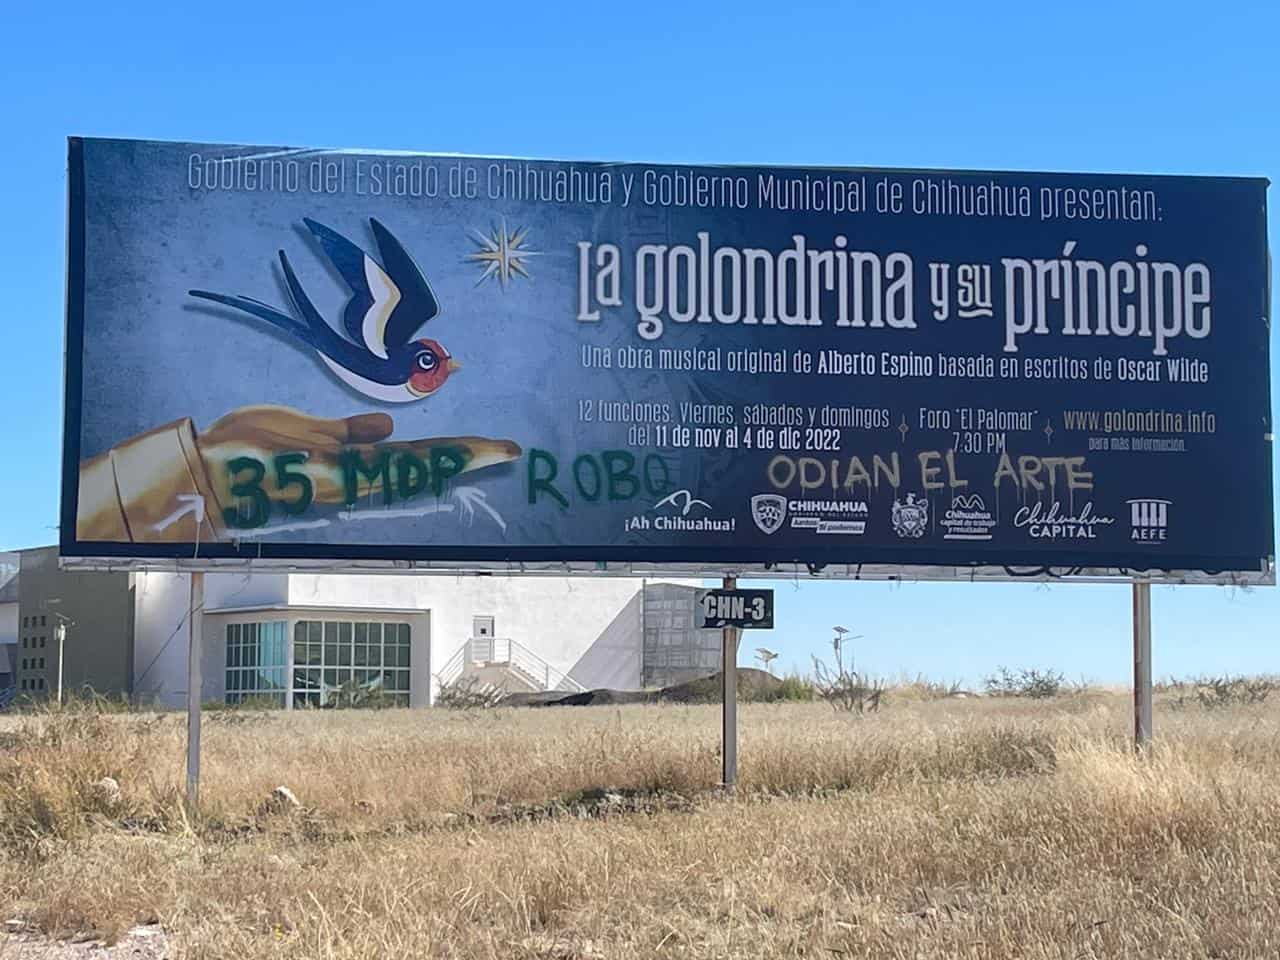 Grafitean publicidad pagada por Gobierno del Estado de la polémica obra “La Golondrina y su Príncipe”; “35 MDP, Robo, Odian el arte” le pintan